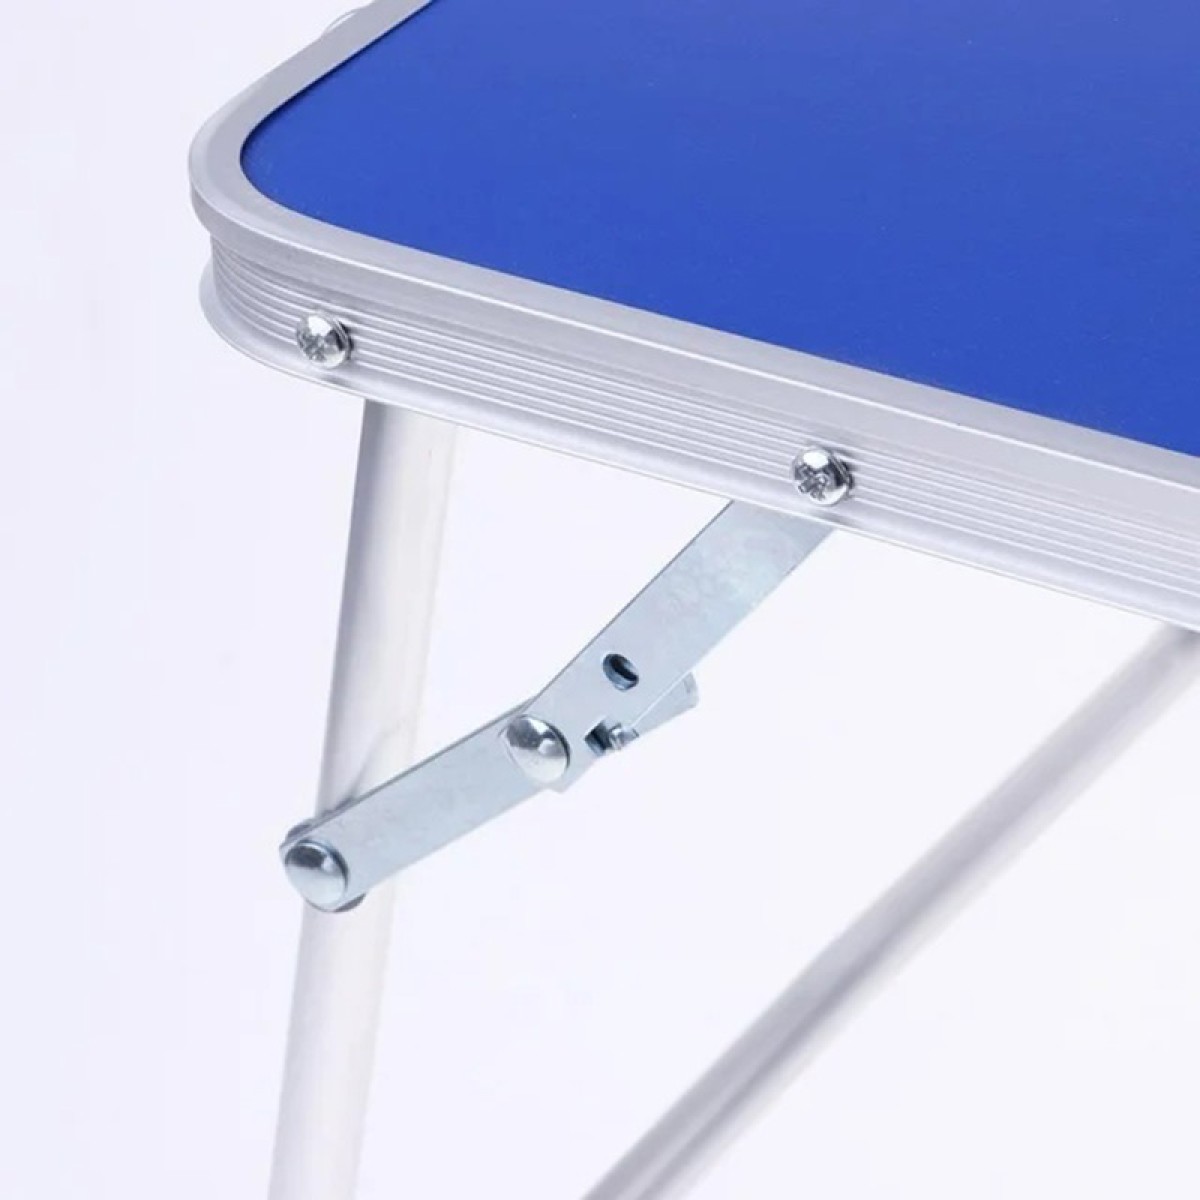 Τραπέζι Πτυσσόμενο 60x40x24,5cm αλουμίνιο με επίστρωση mdf σε μπλε χρώμα Sidirela E-3494